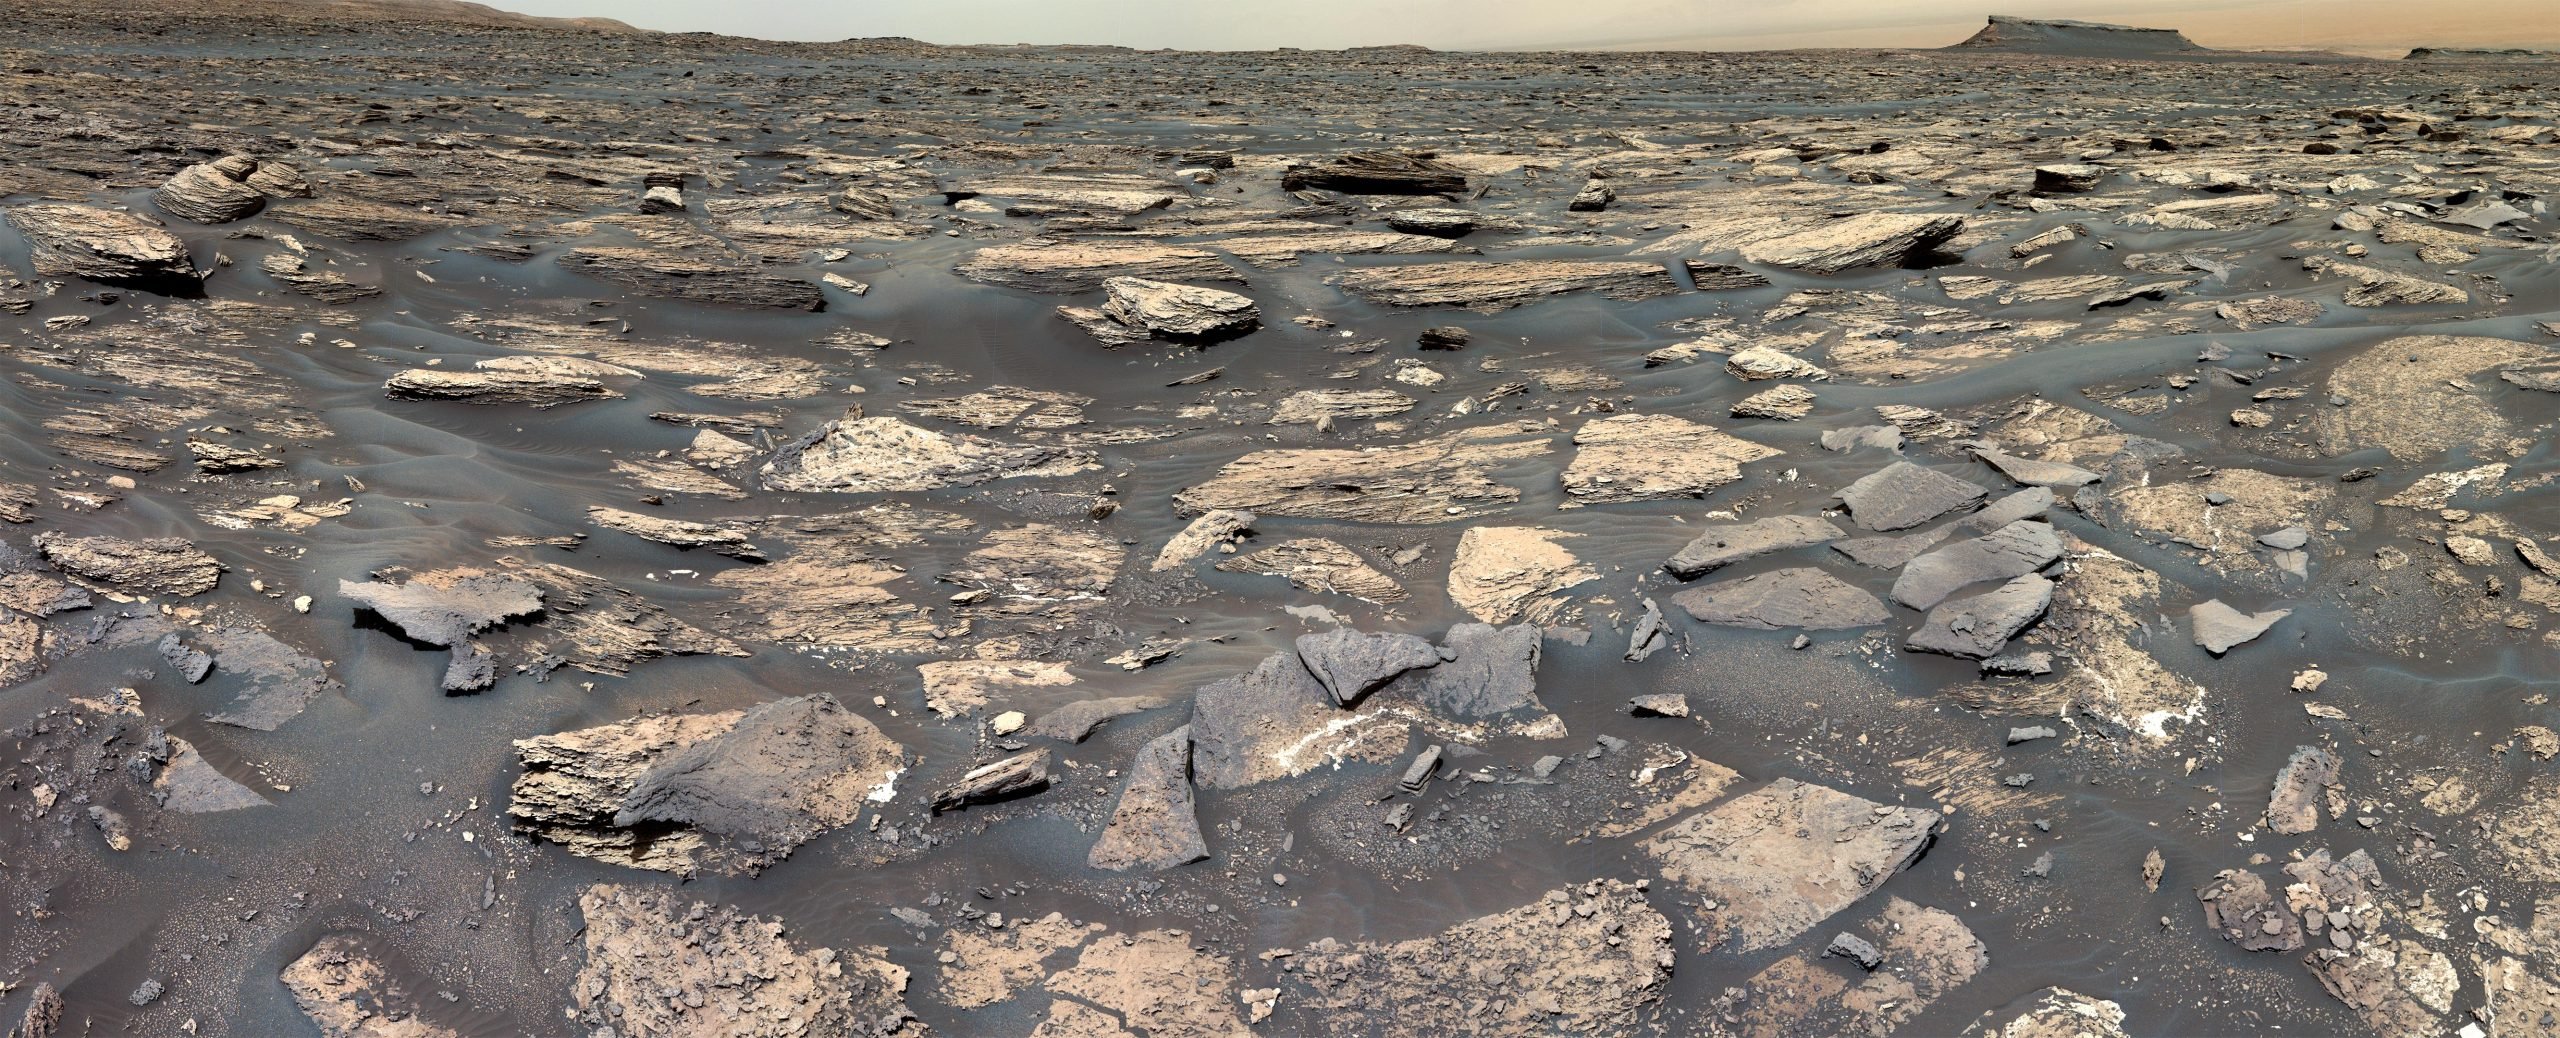 Der NASA-Rover Curiosity entdeckt Anzeichen einer erdähnlichen Umgebung auf dem alten Mars